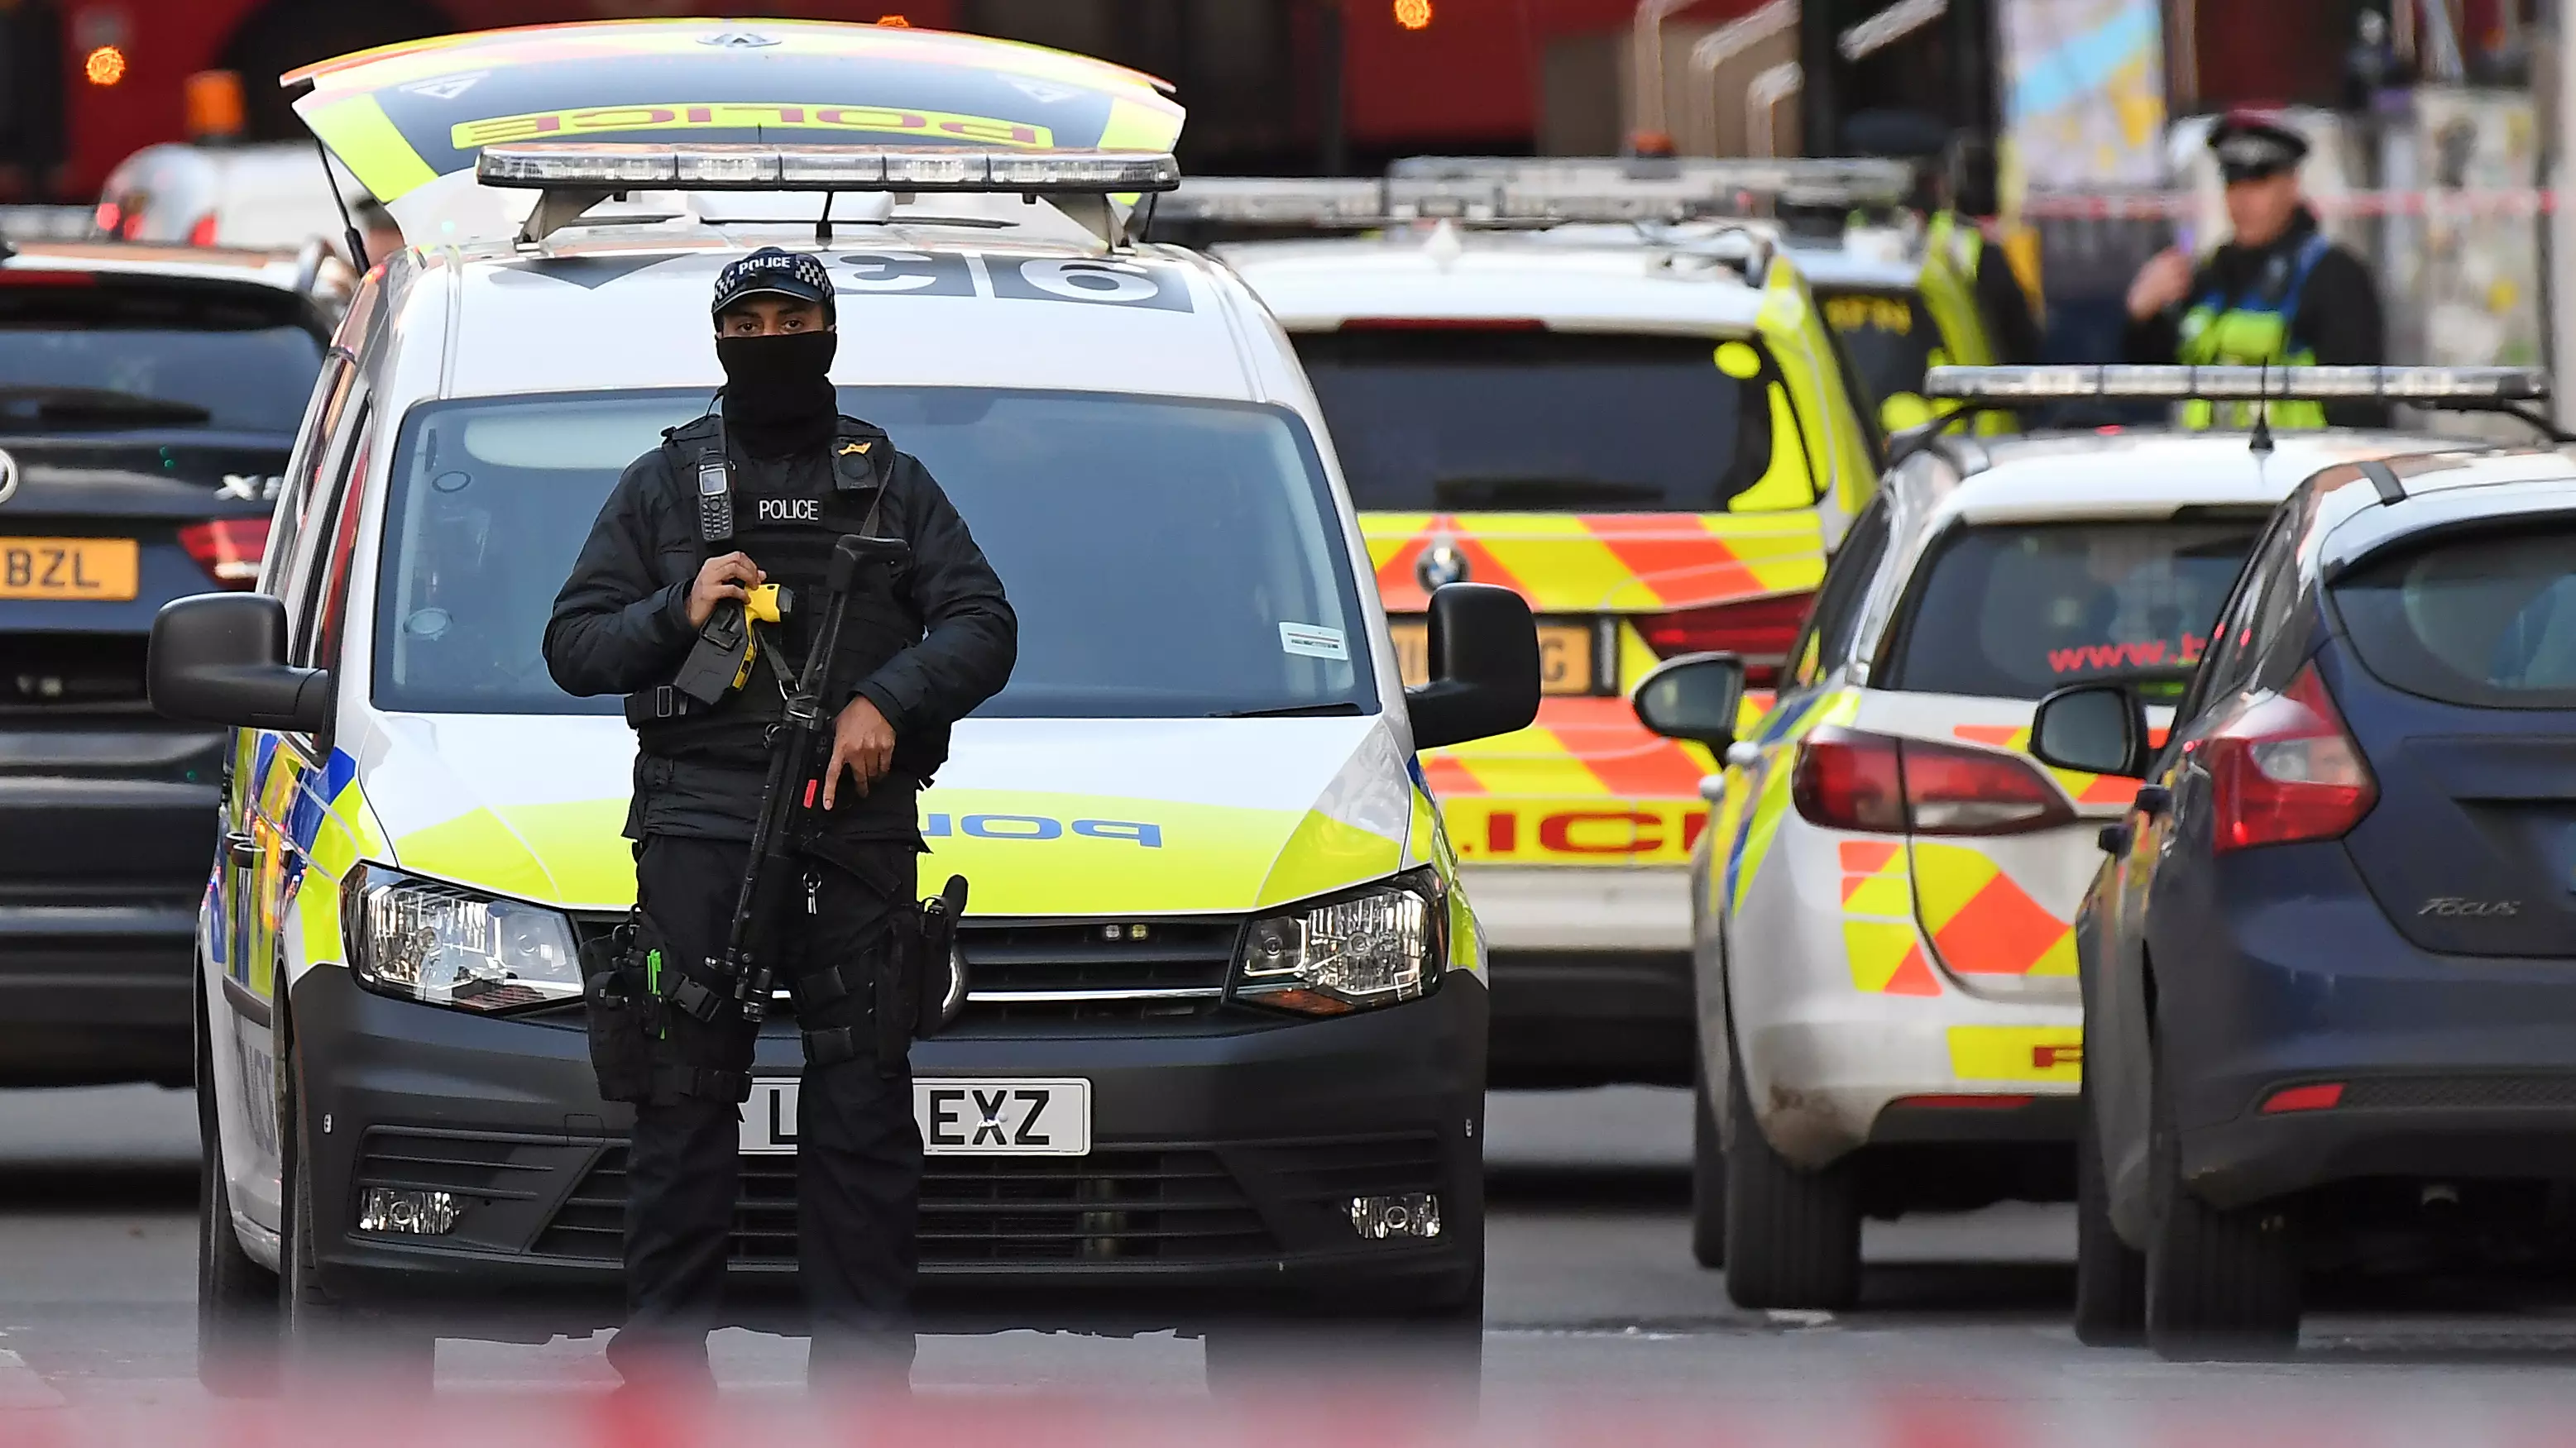 London Bridge Terror Suspect Shot Dead By Police At The Scene